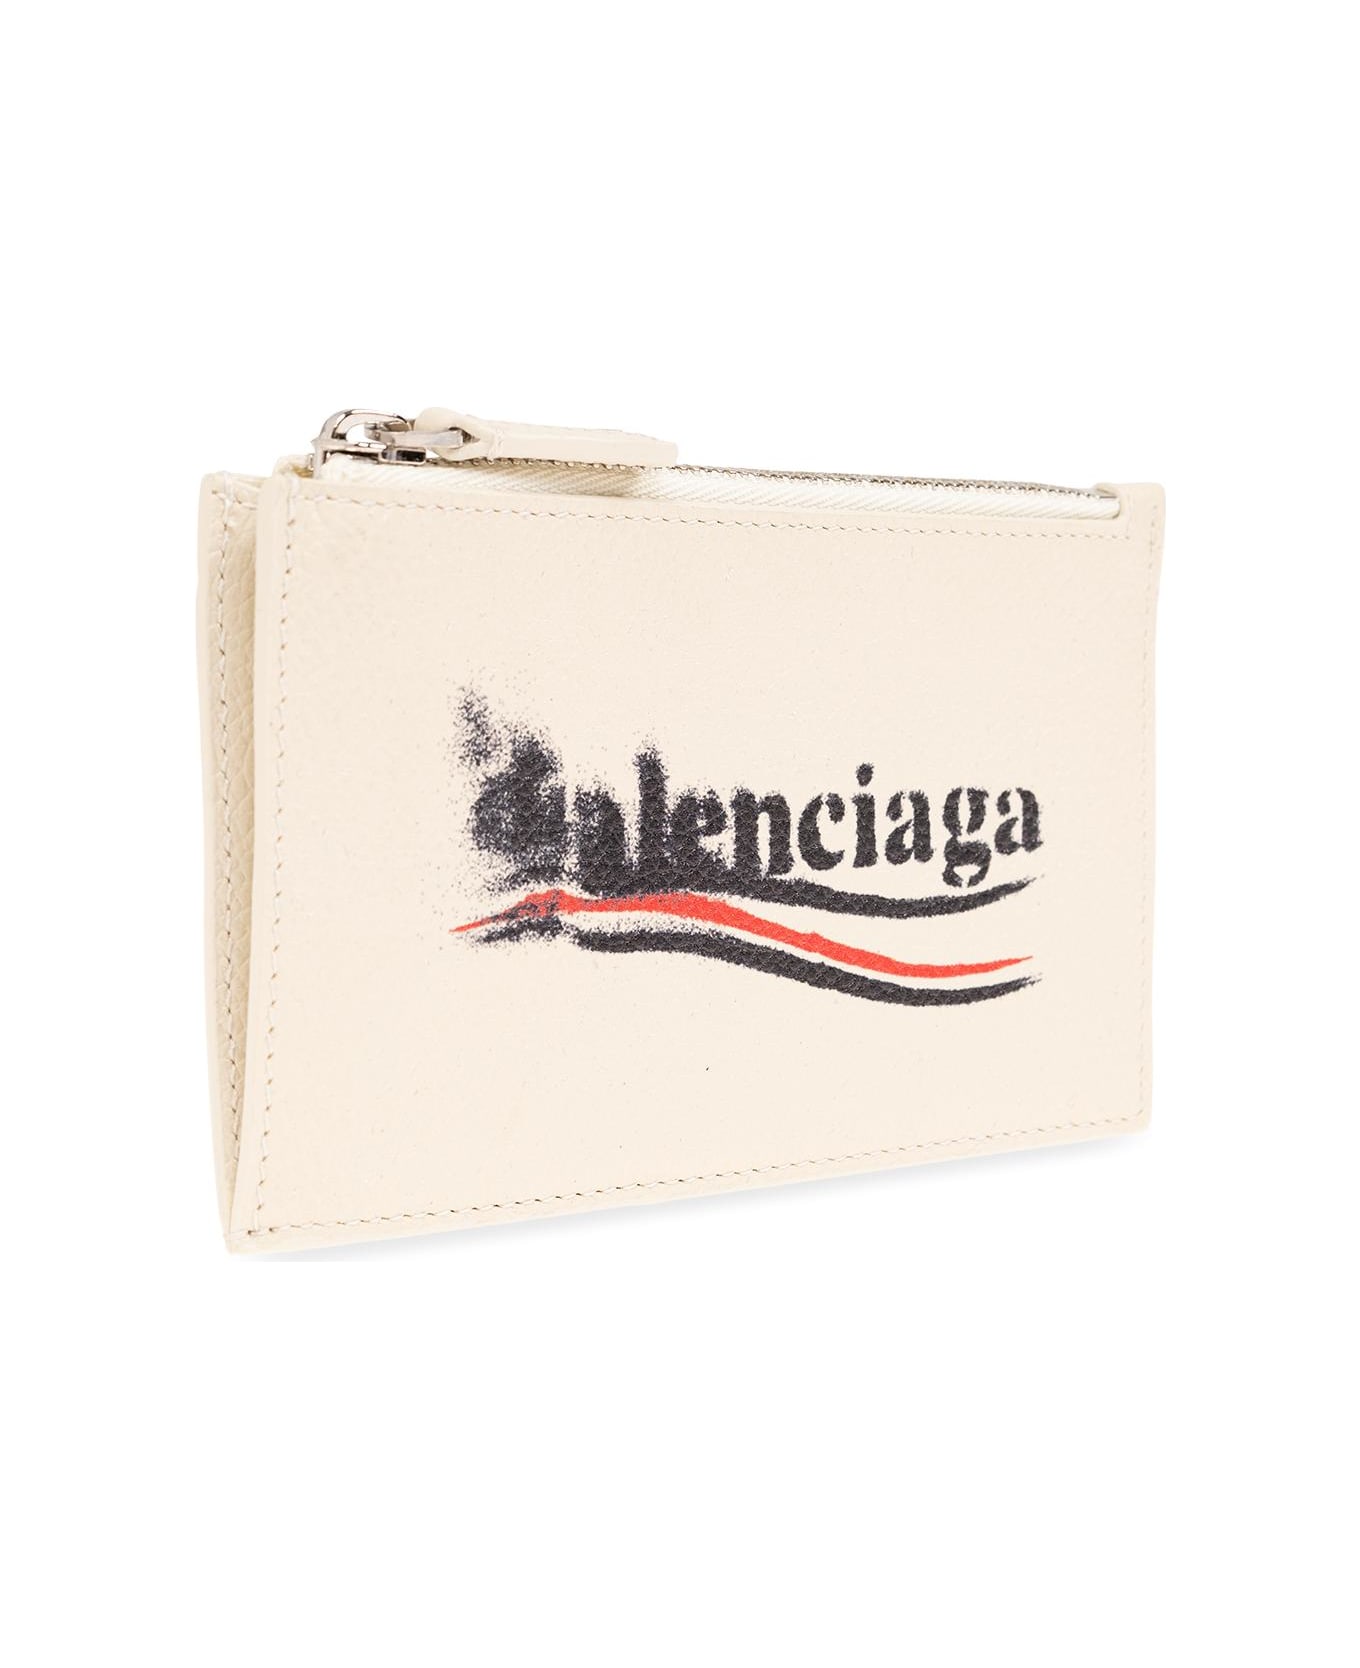 Balenciaga Card Holder - Beige 財布